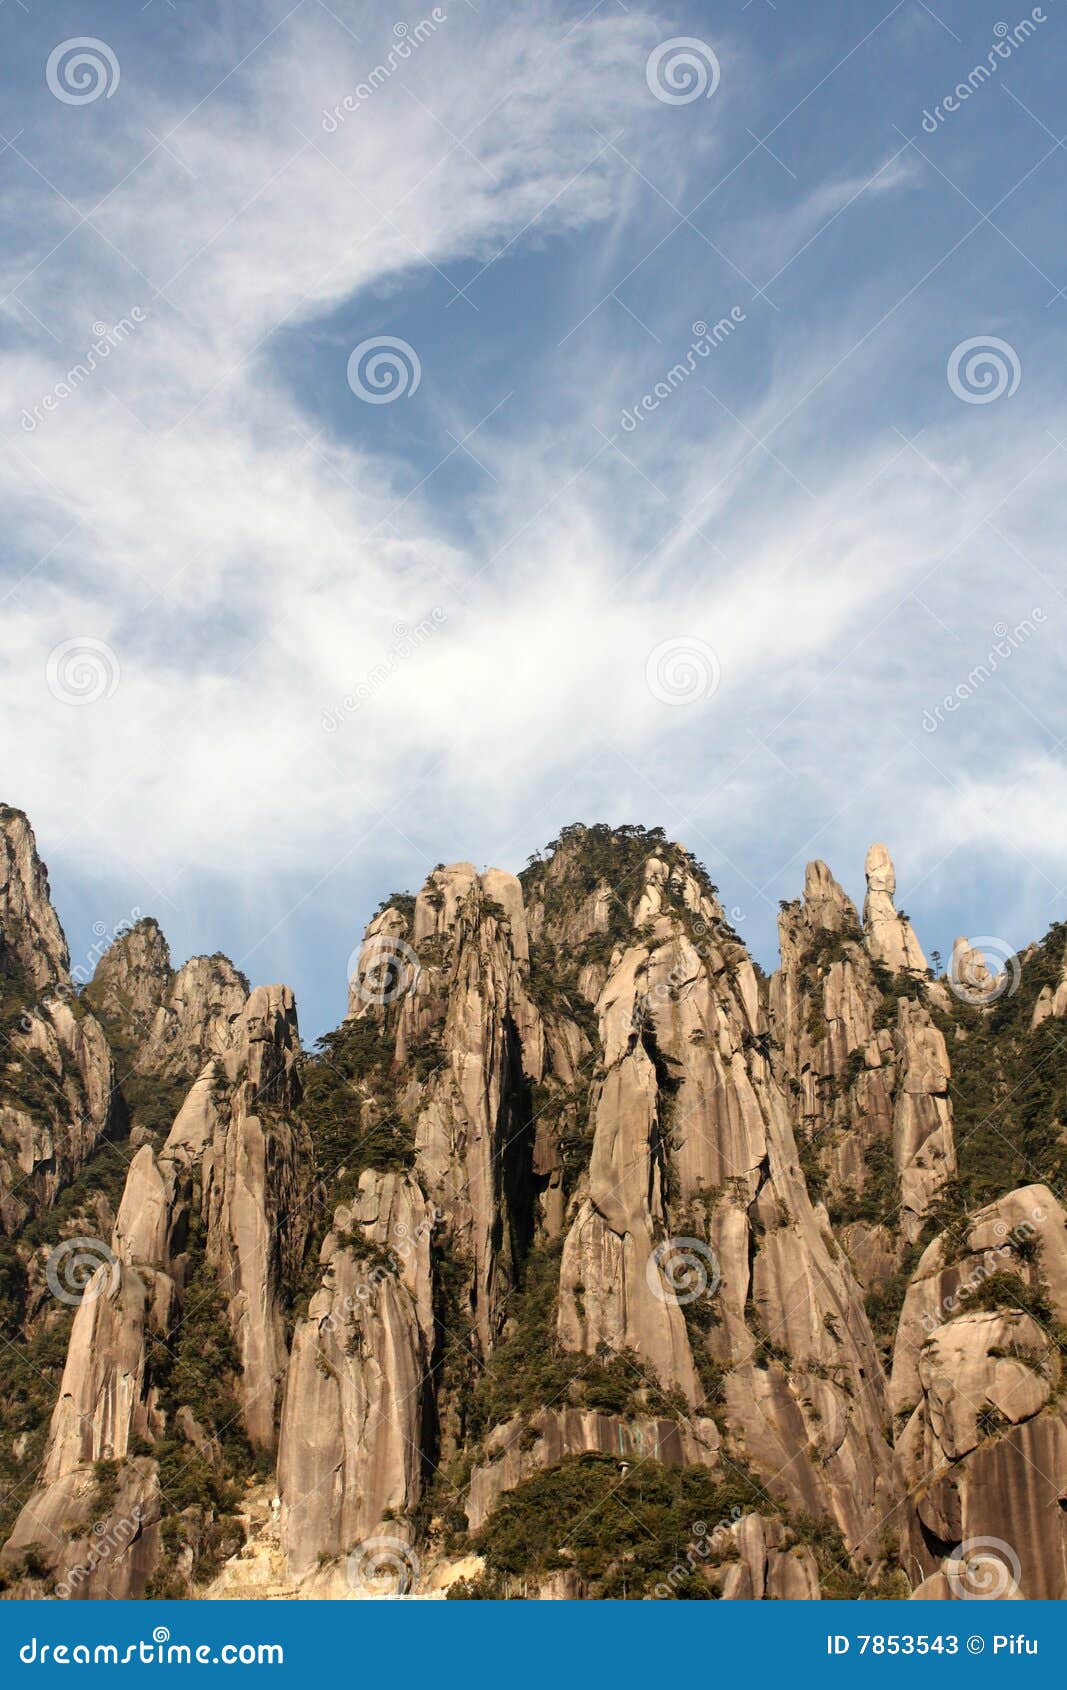 china jiangxi province sanqing hill mountain